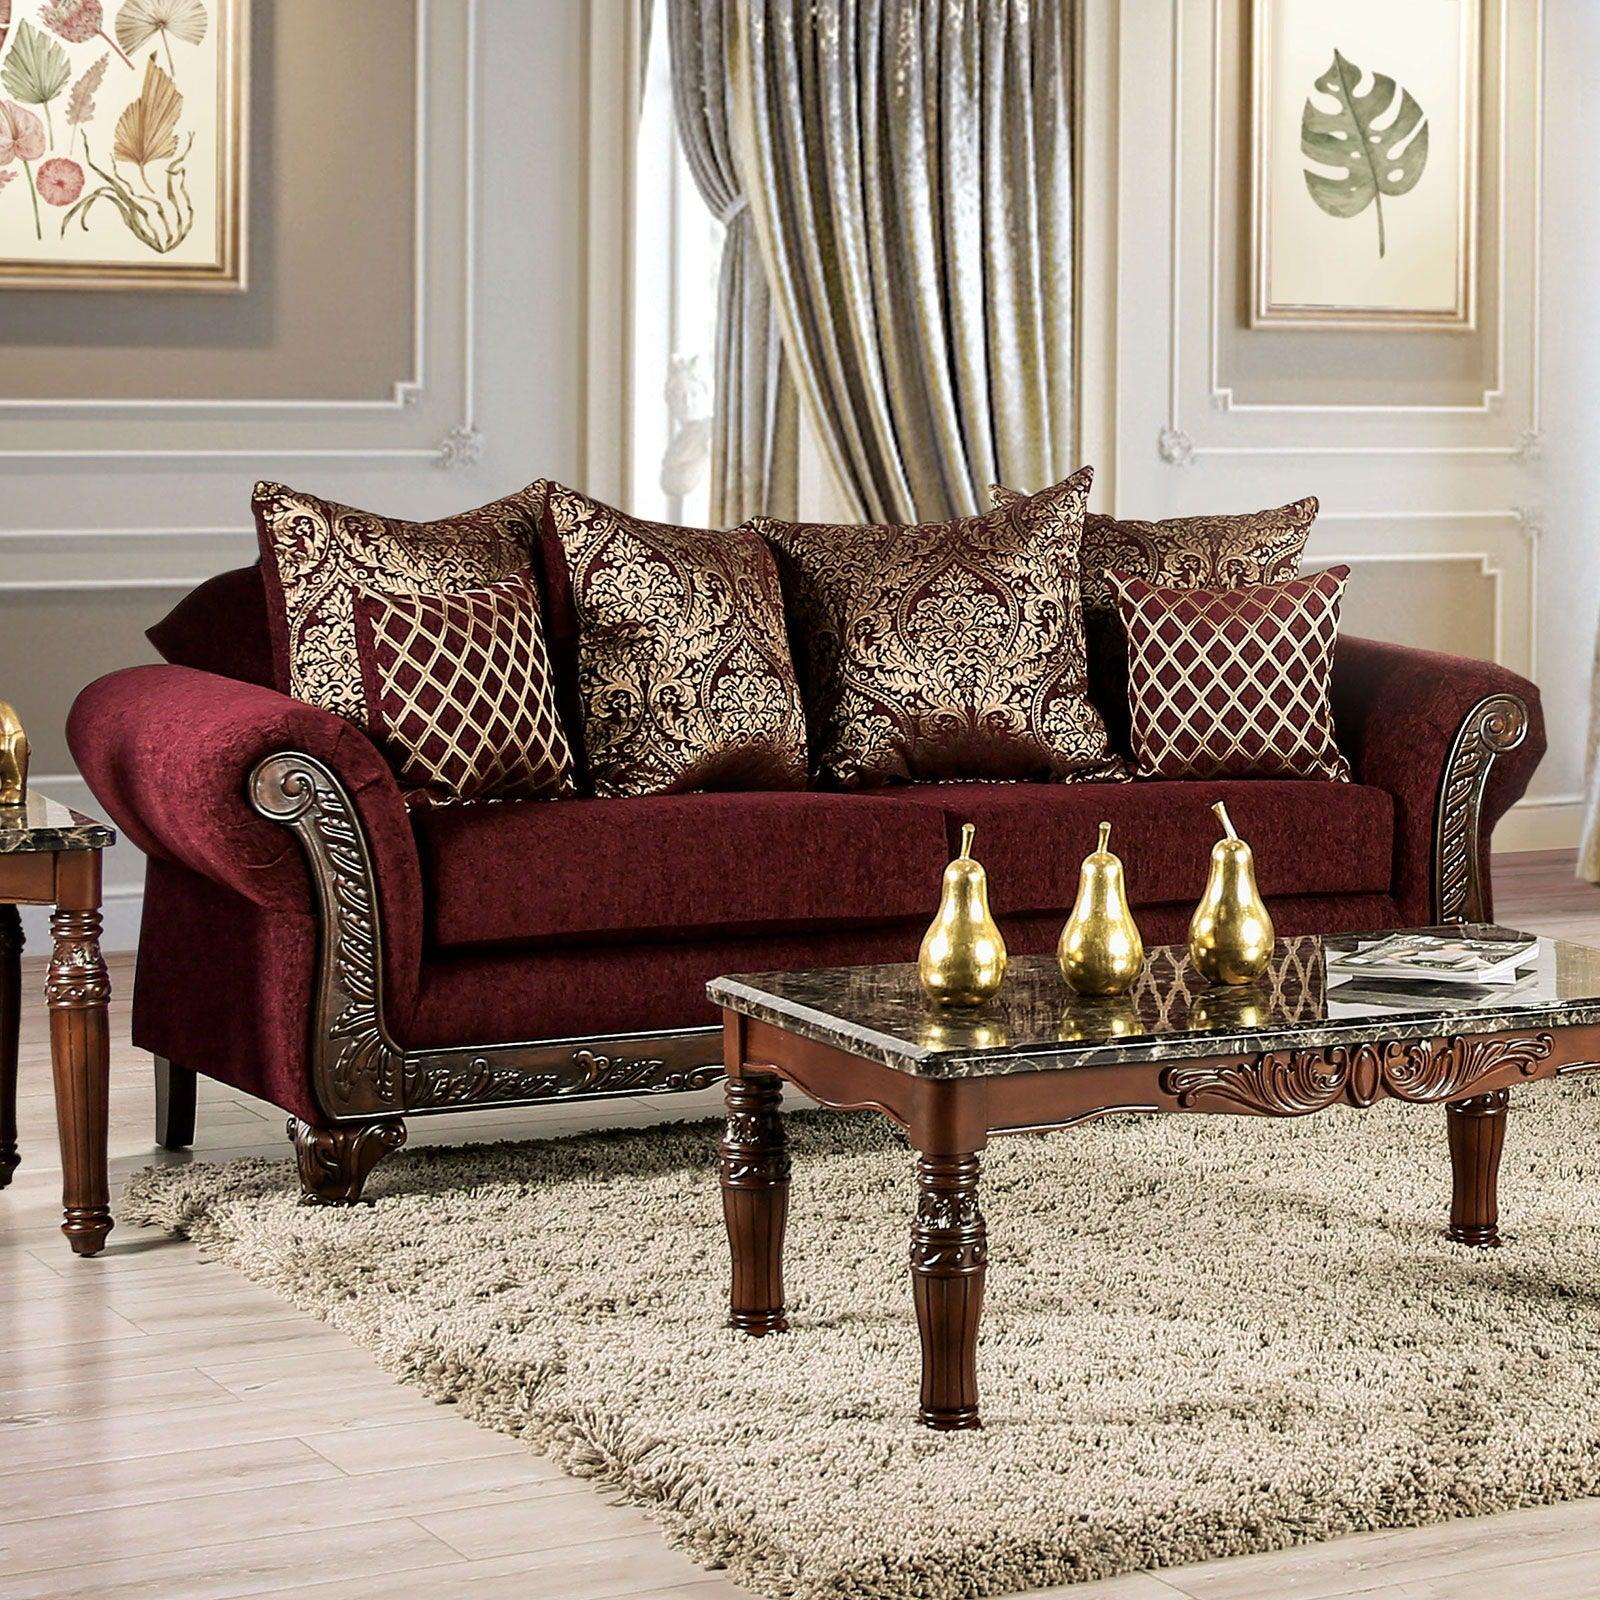 Furniture of America - Letizia - Sofa - Wine / Walnut - 5th Avenue Furniture